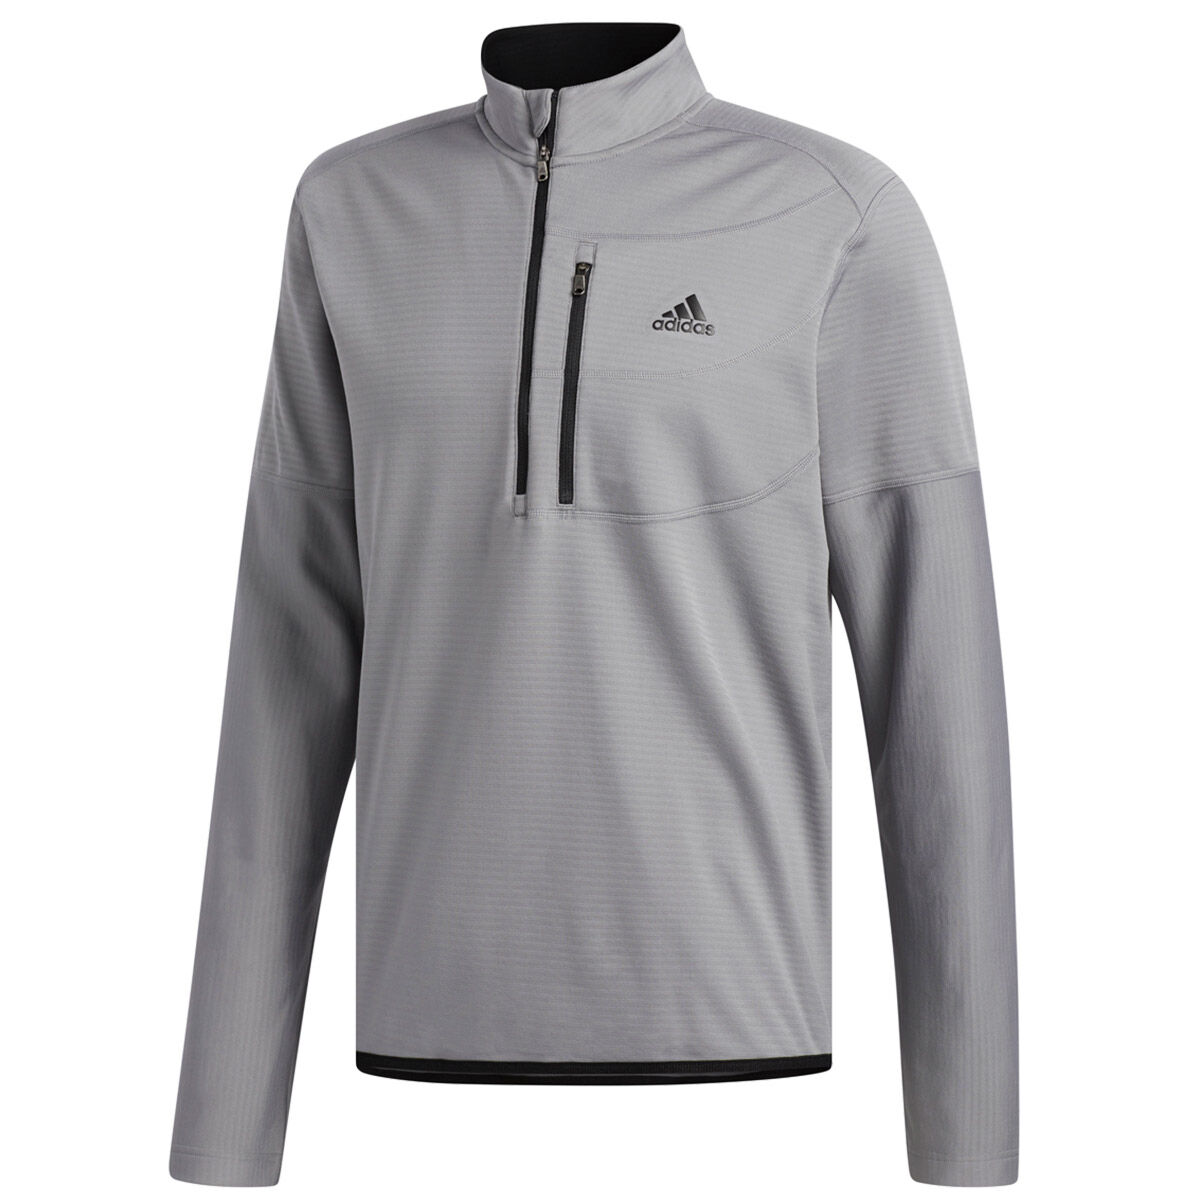 adidas golf climawarm gridded jacket